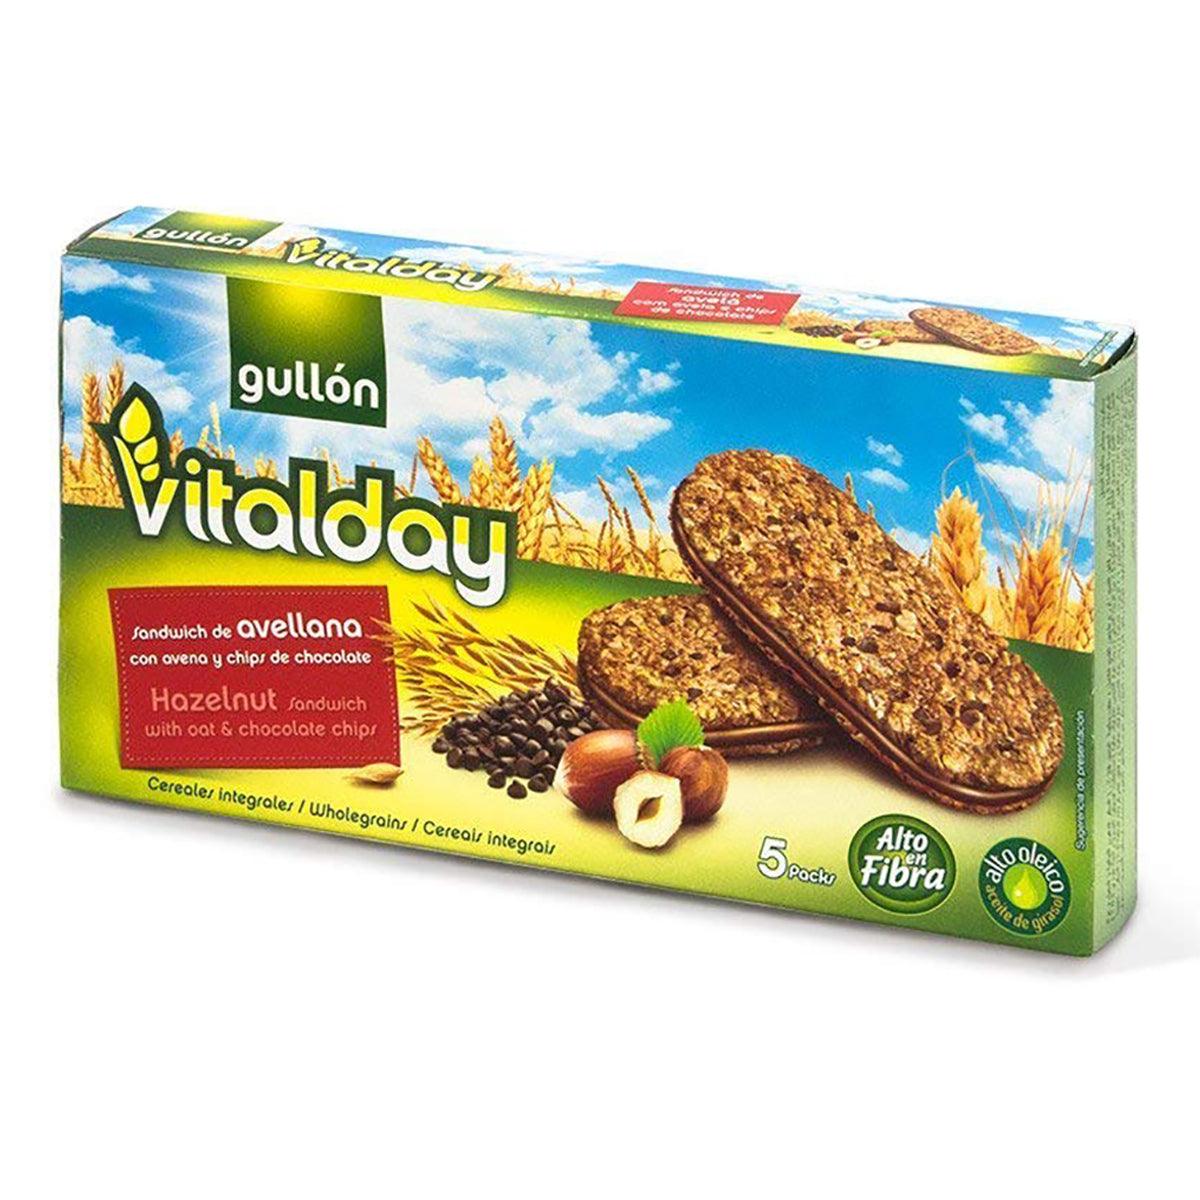 Gullon Vitalday Hazenut Bis Seabra Foods – 7.76oz Online Crnch